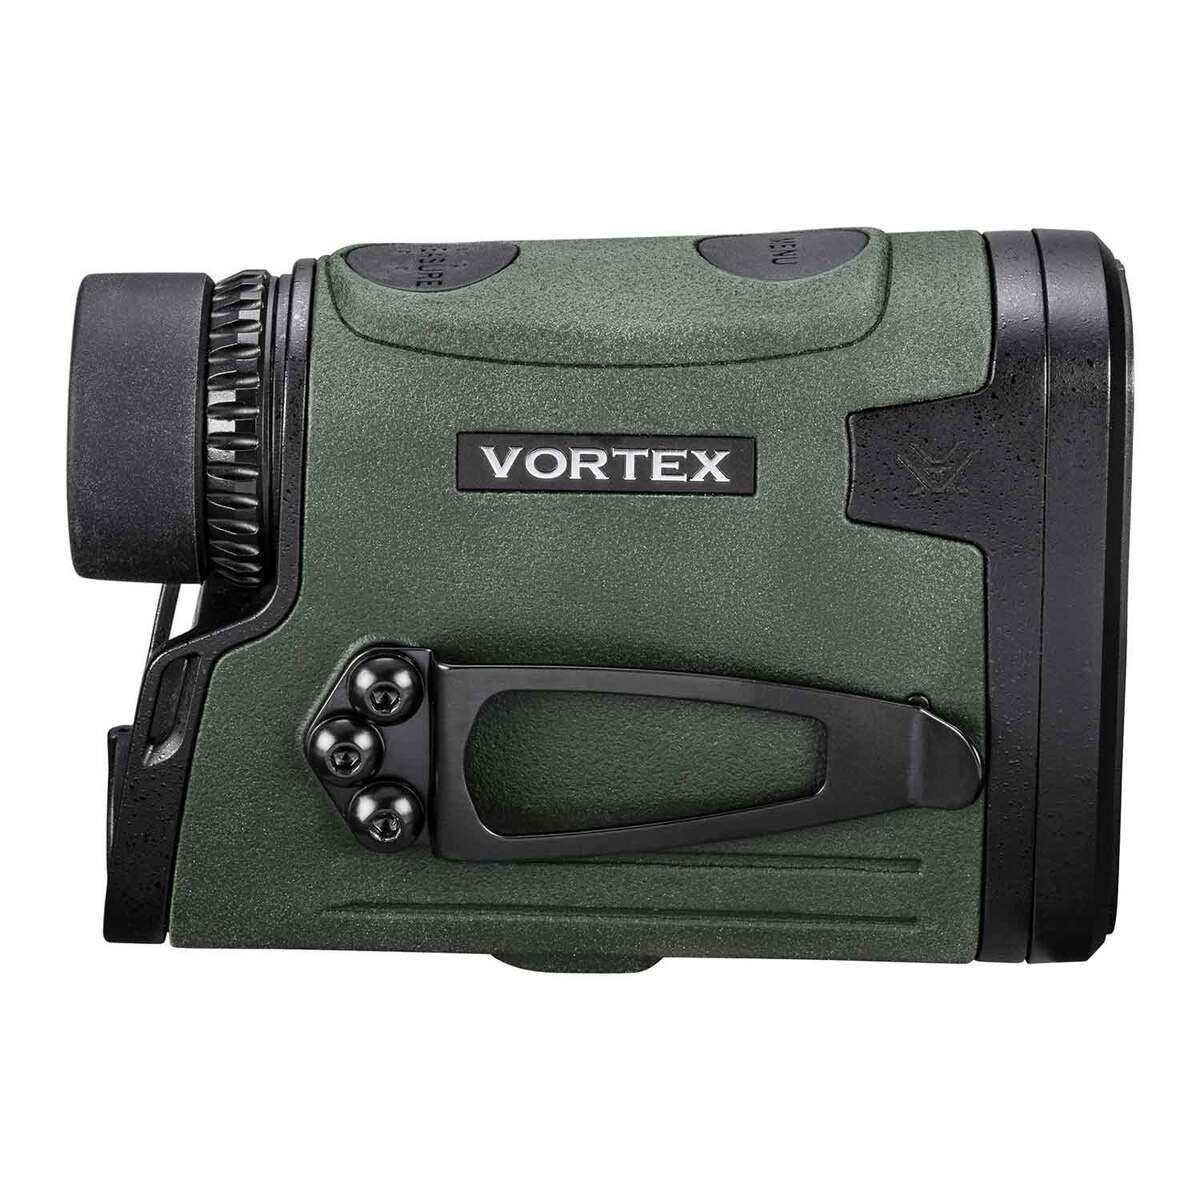 Viper HD 3000 Laser Rangefinder